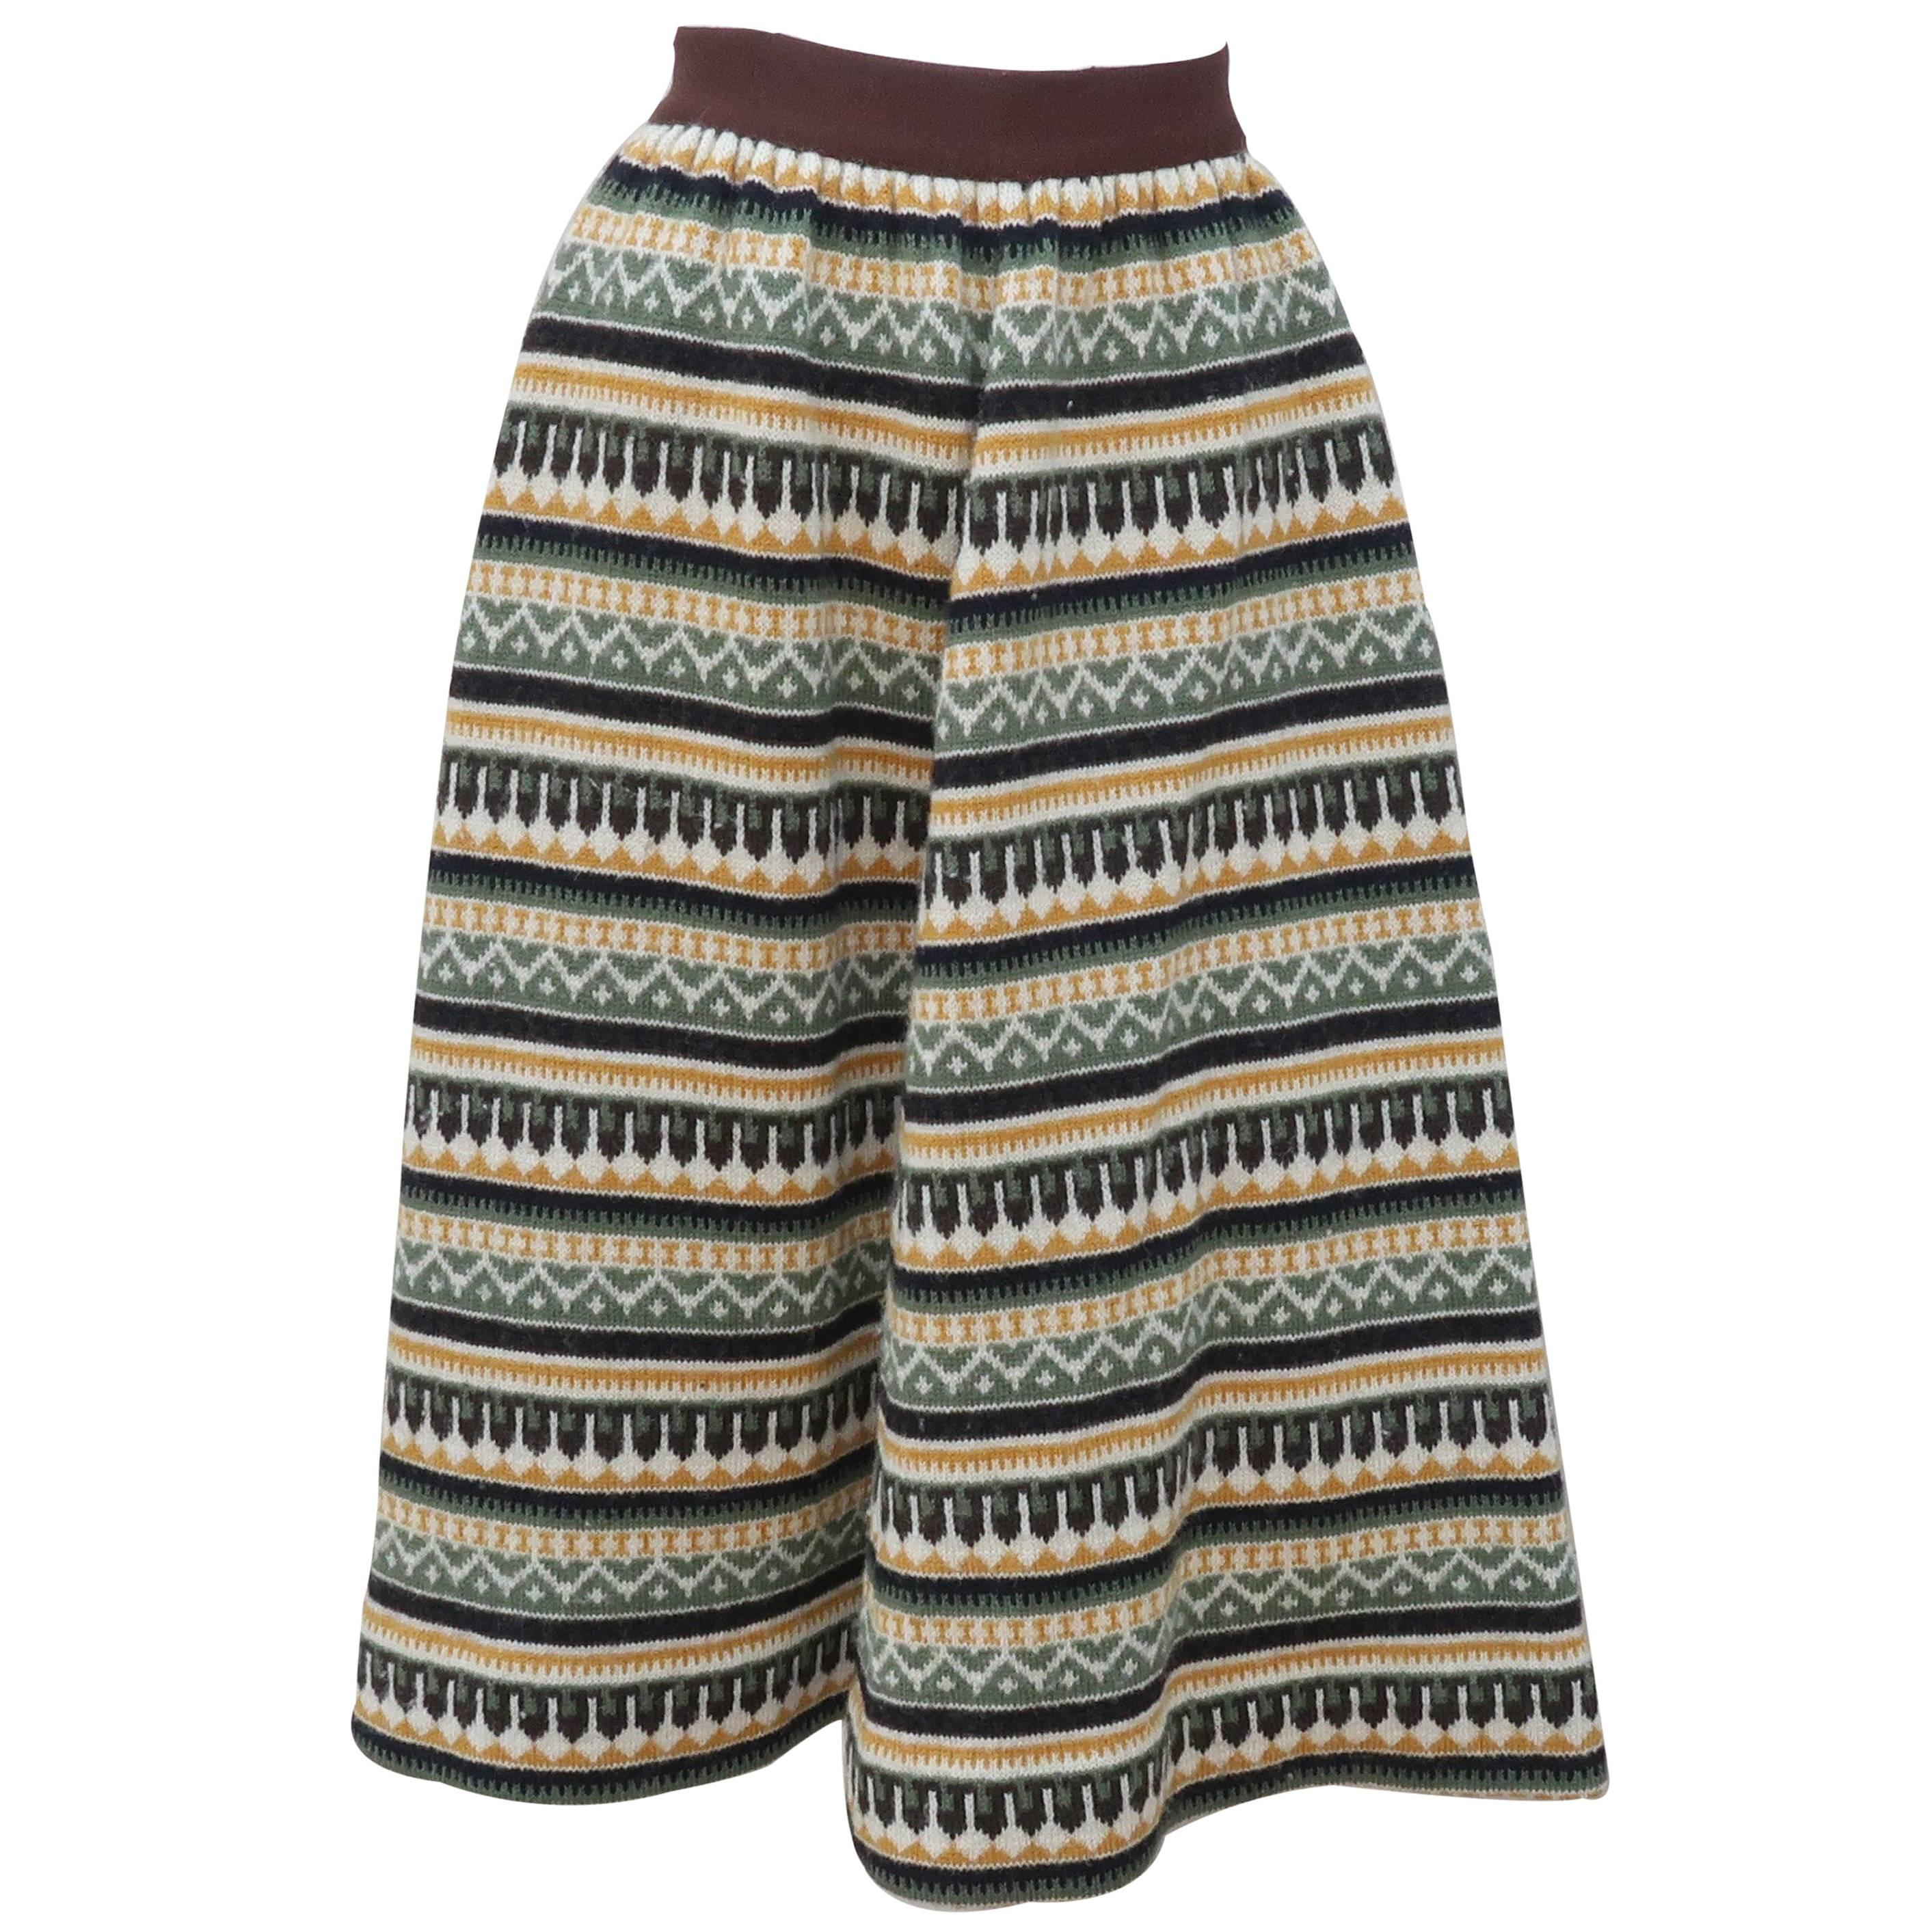 1950's Swedish Wool Knit Circle Skirt